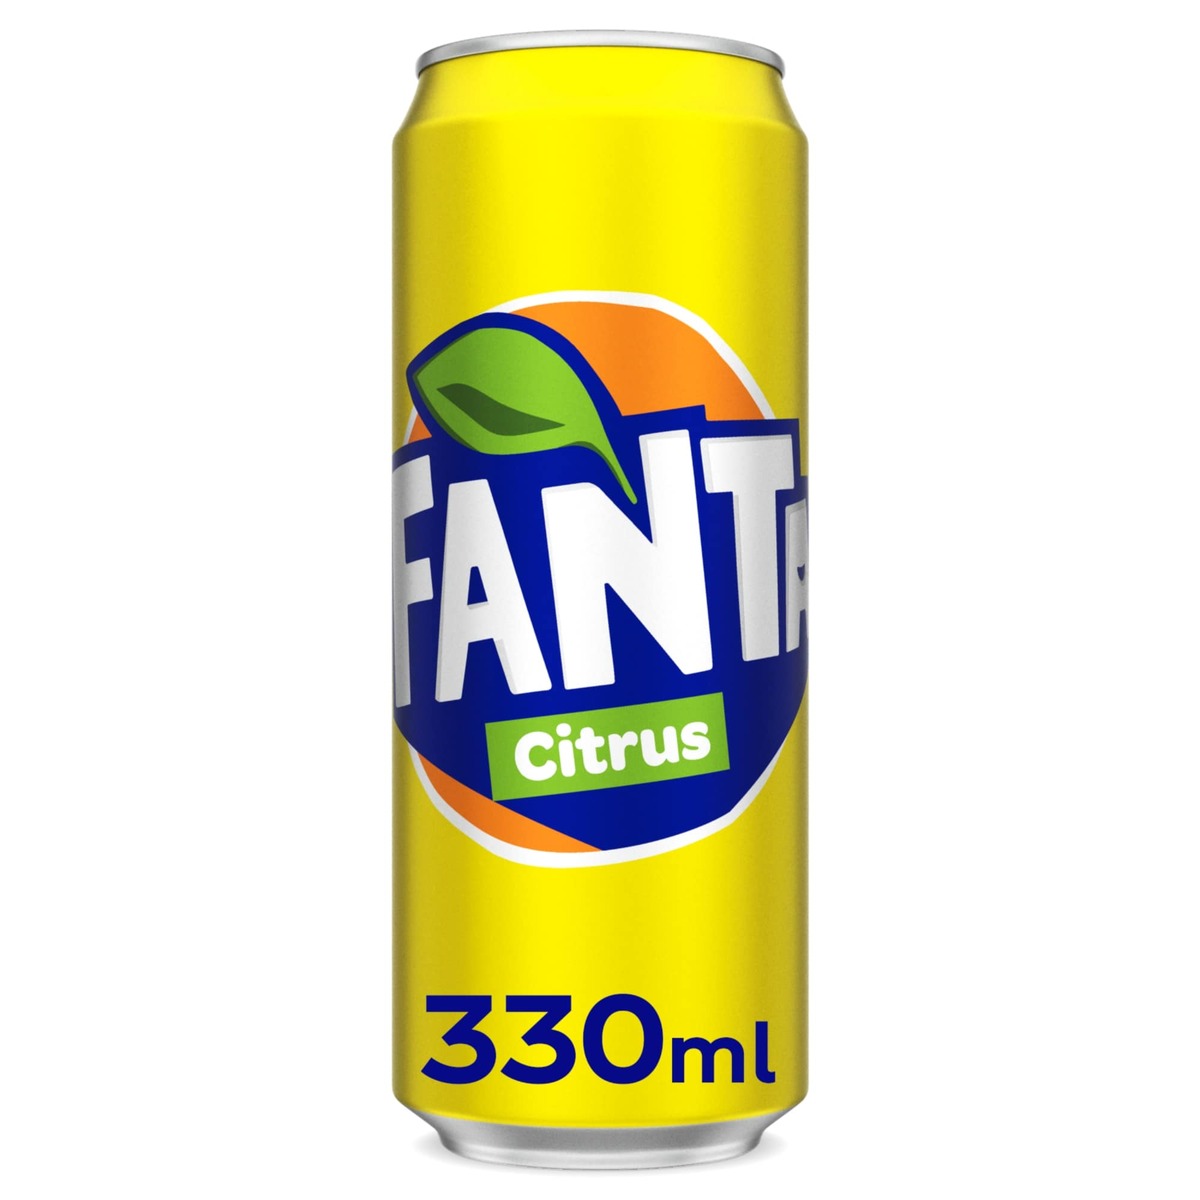 Fanta Citrus 6 x 330 ml